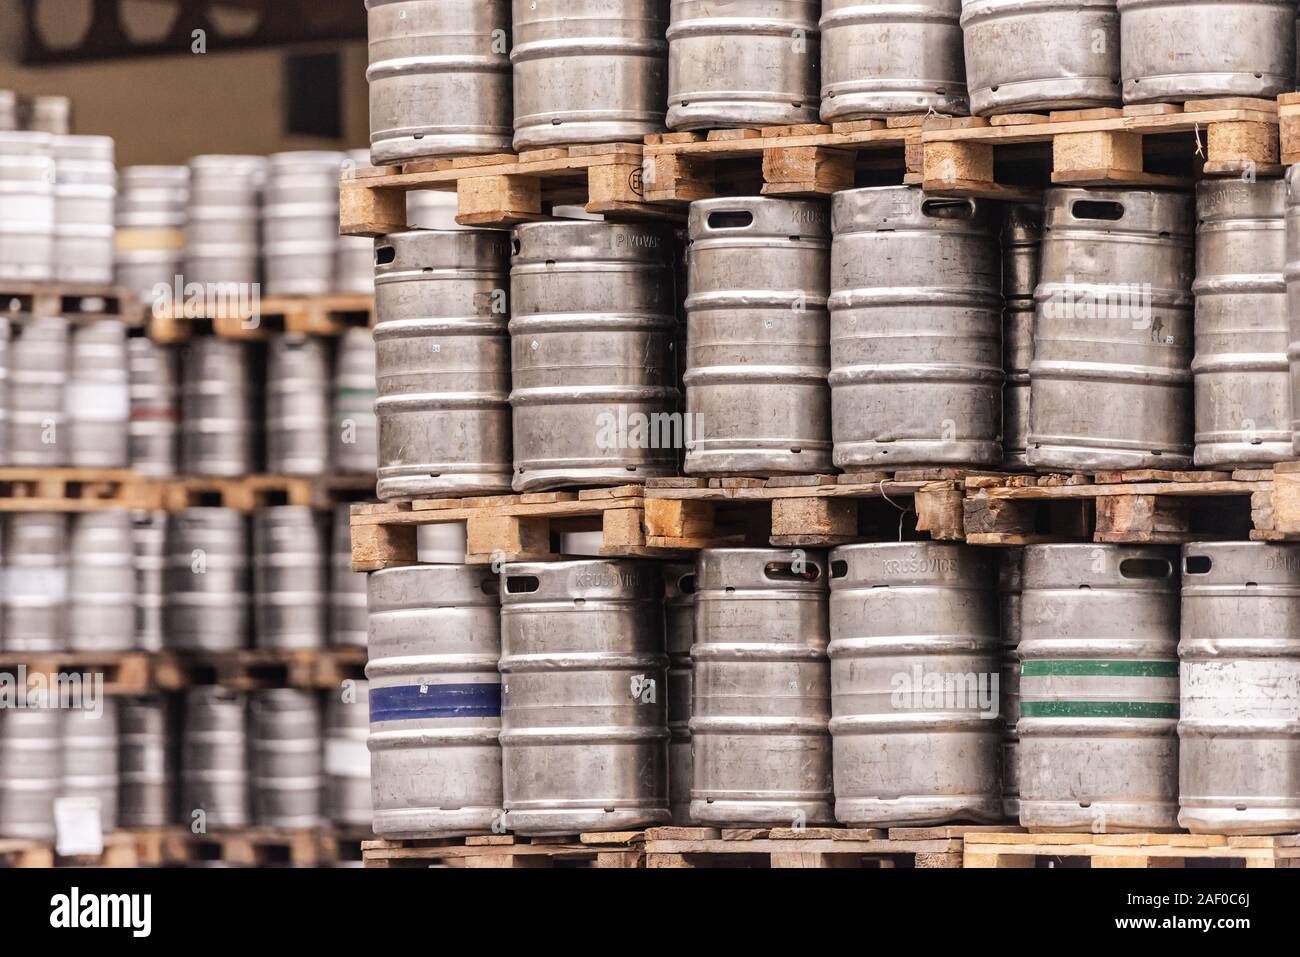 Barili di birra. La fabbrica di birra. Deposito di birra. Rack di barili di birra su pallet. Foto Stock